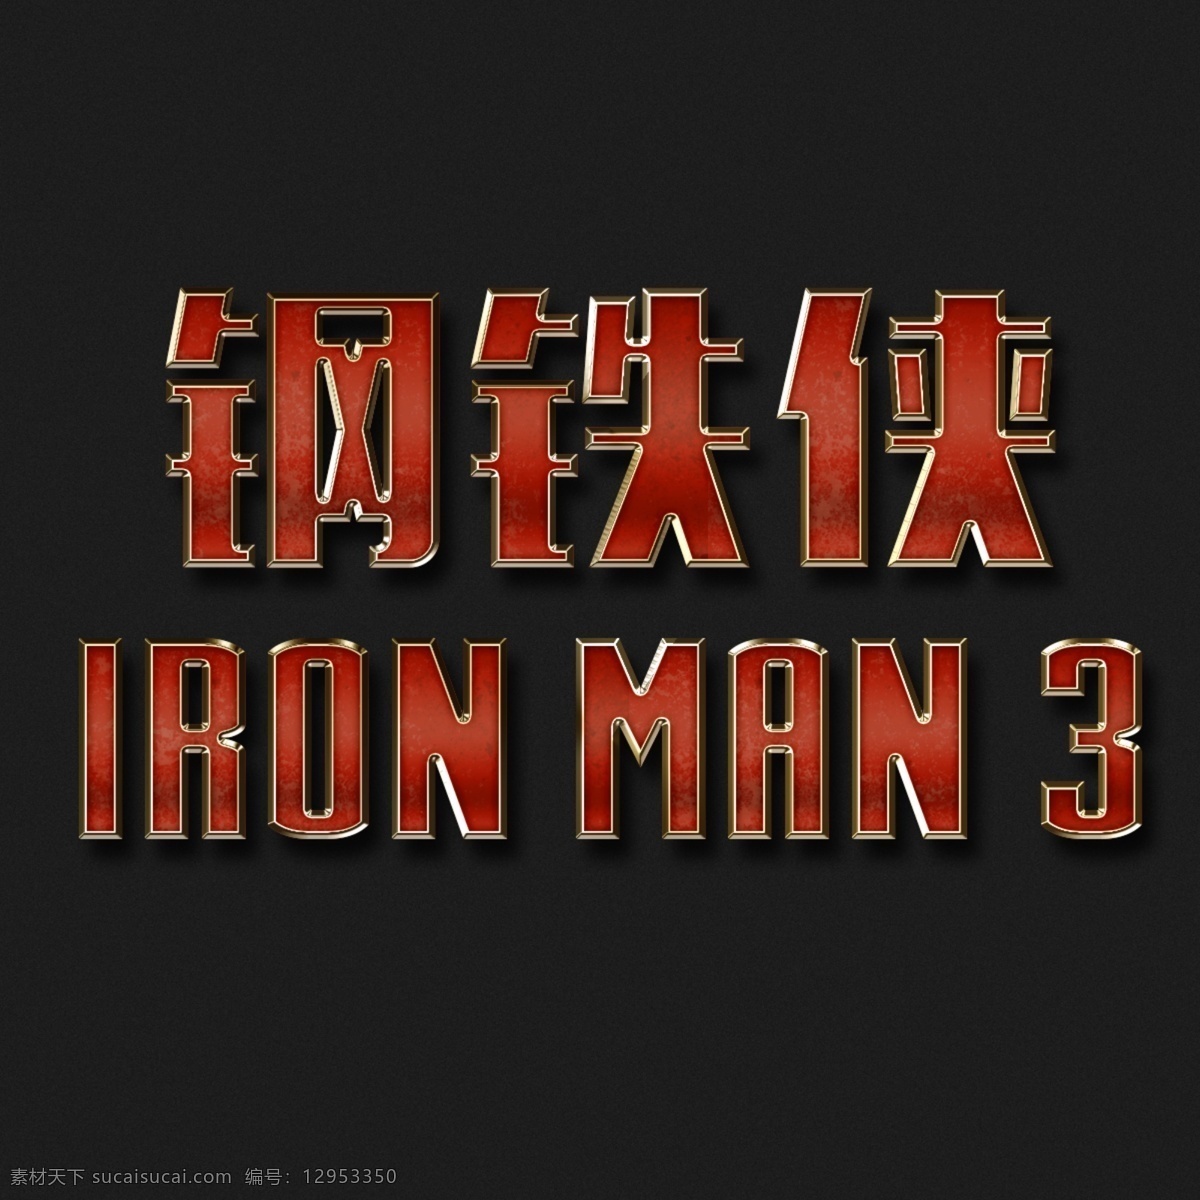 钢铁侠 字体 钢铁侠字体 特效字体 钢铁侠3 iron man 杂图